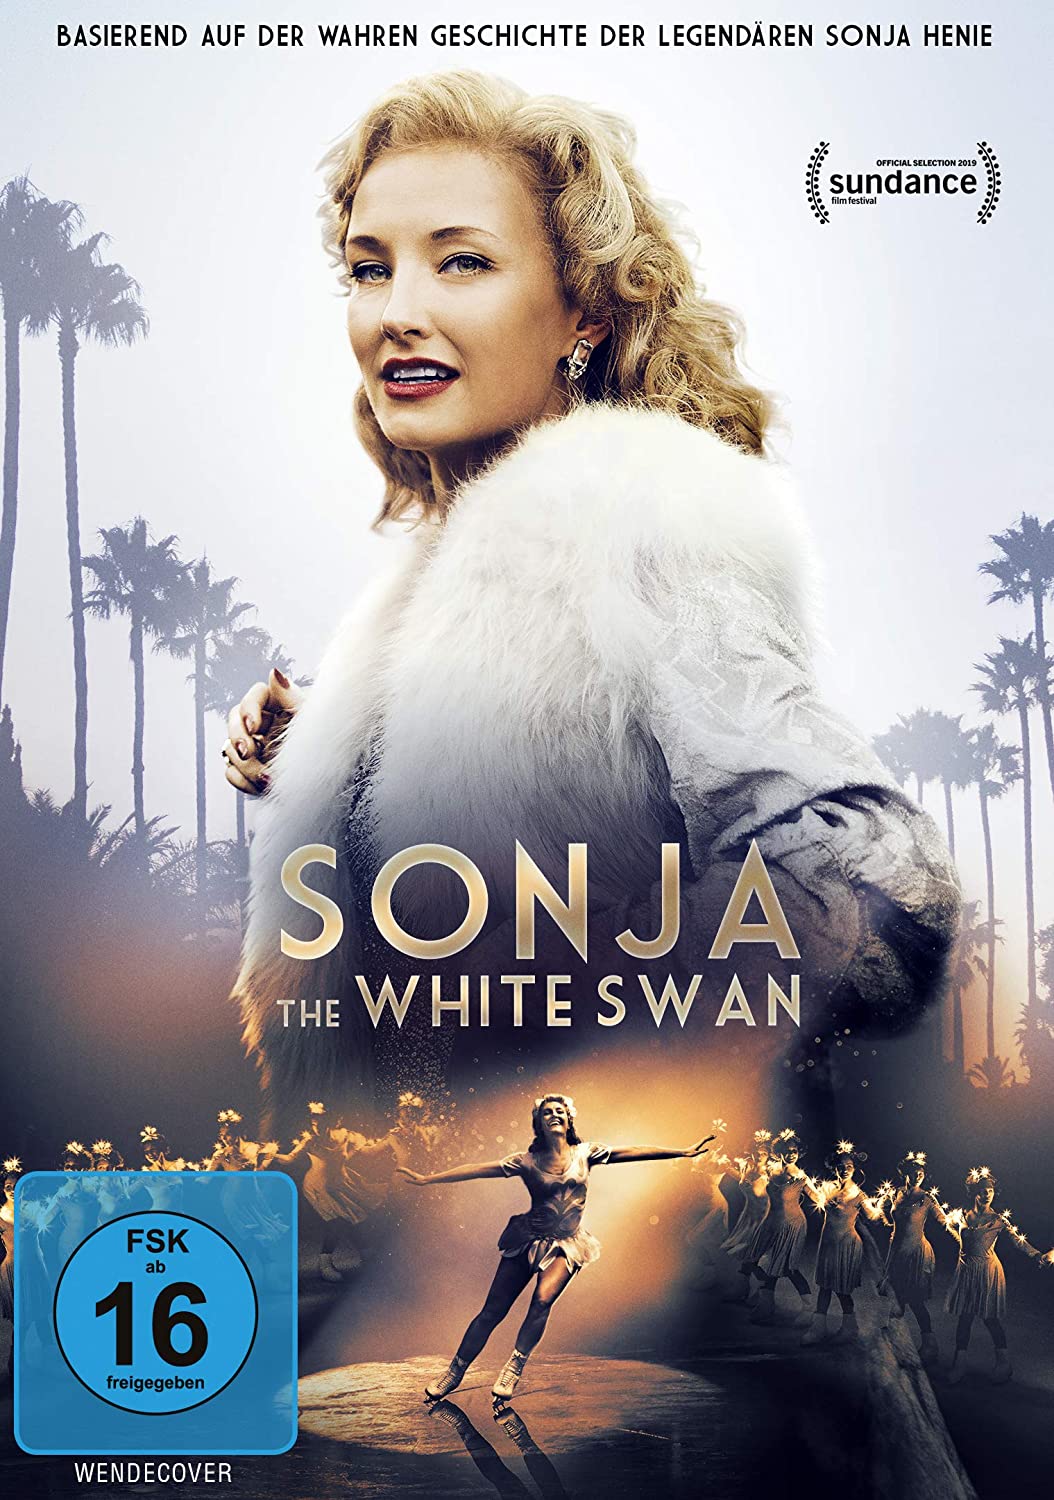 Sonja The White Swan | Film-Rezensionen.de